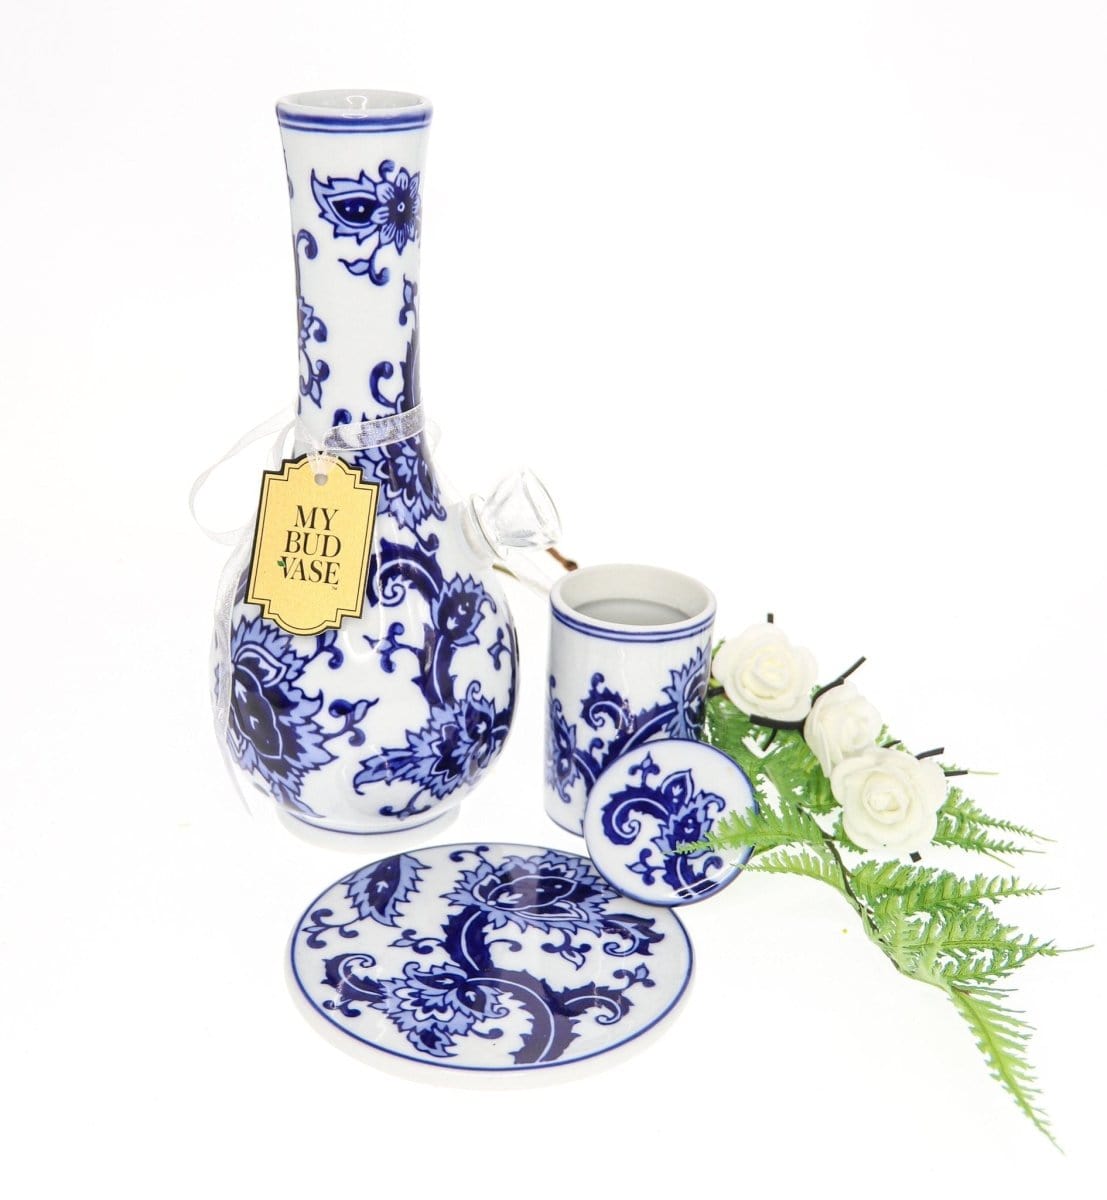 My Bud Vase Water Pipe My Bud Vase "Joy" Chinese Porcelain Vase Bong Set